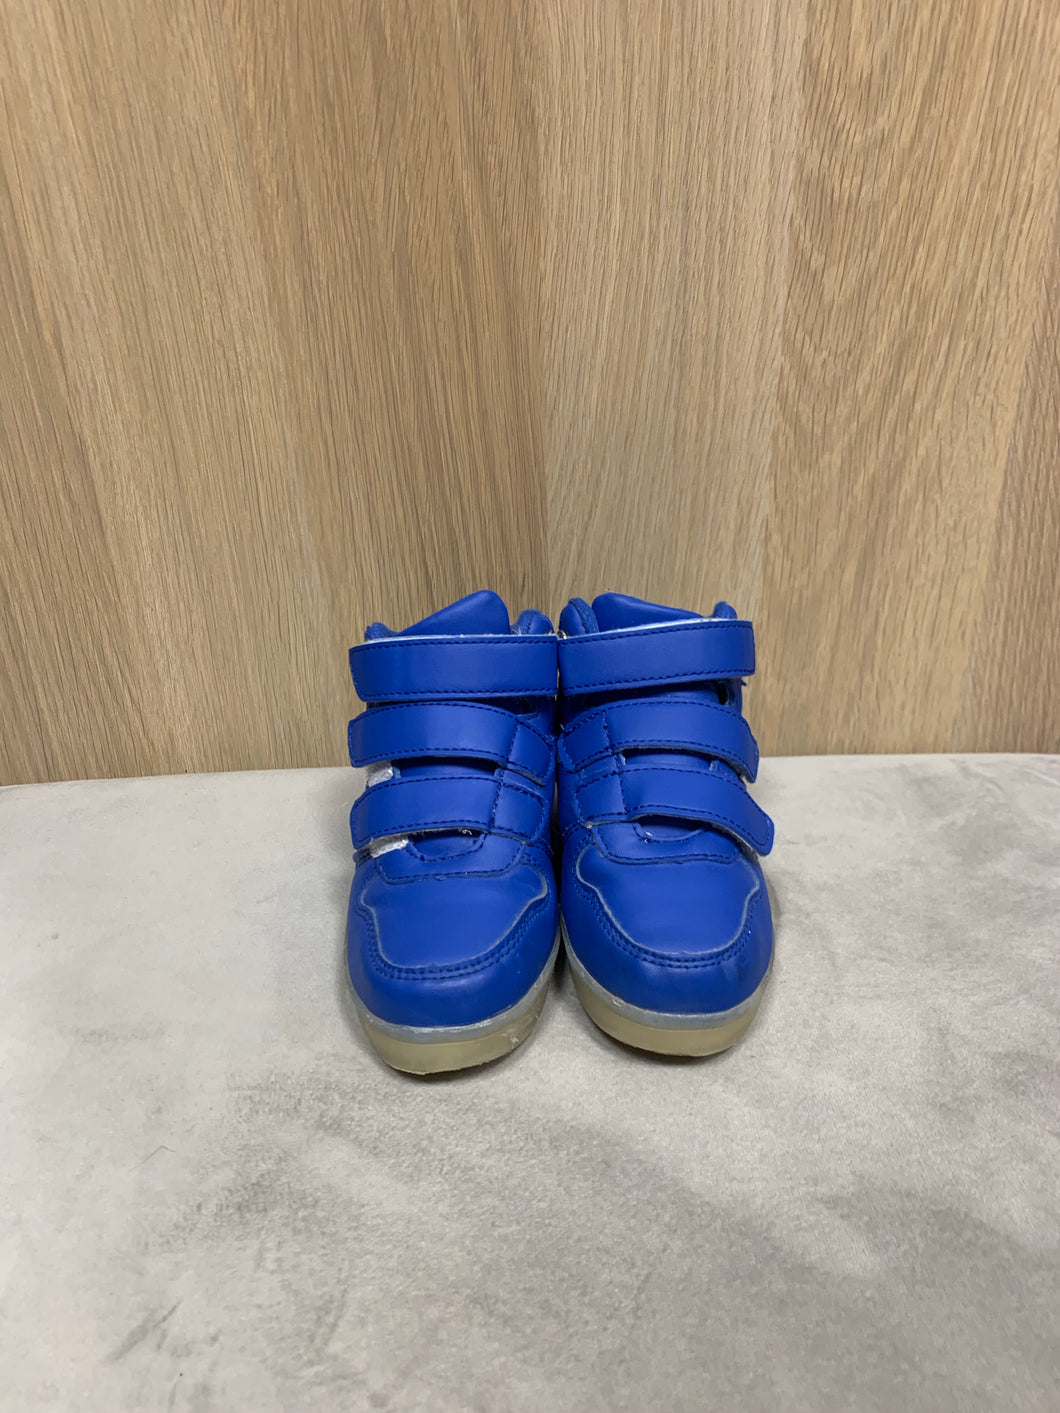 Barn skor blå lysande med laddare storlek 26